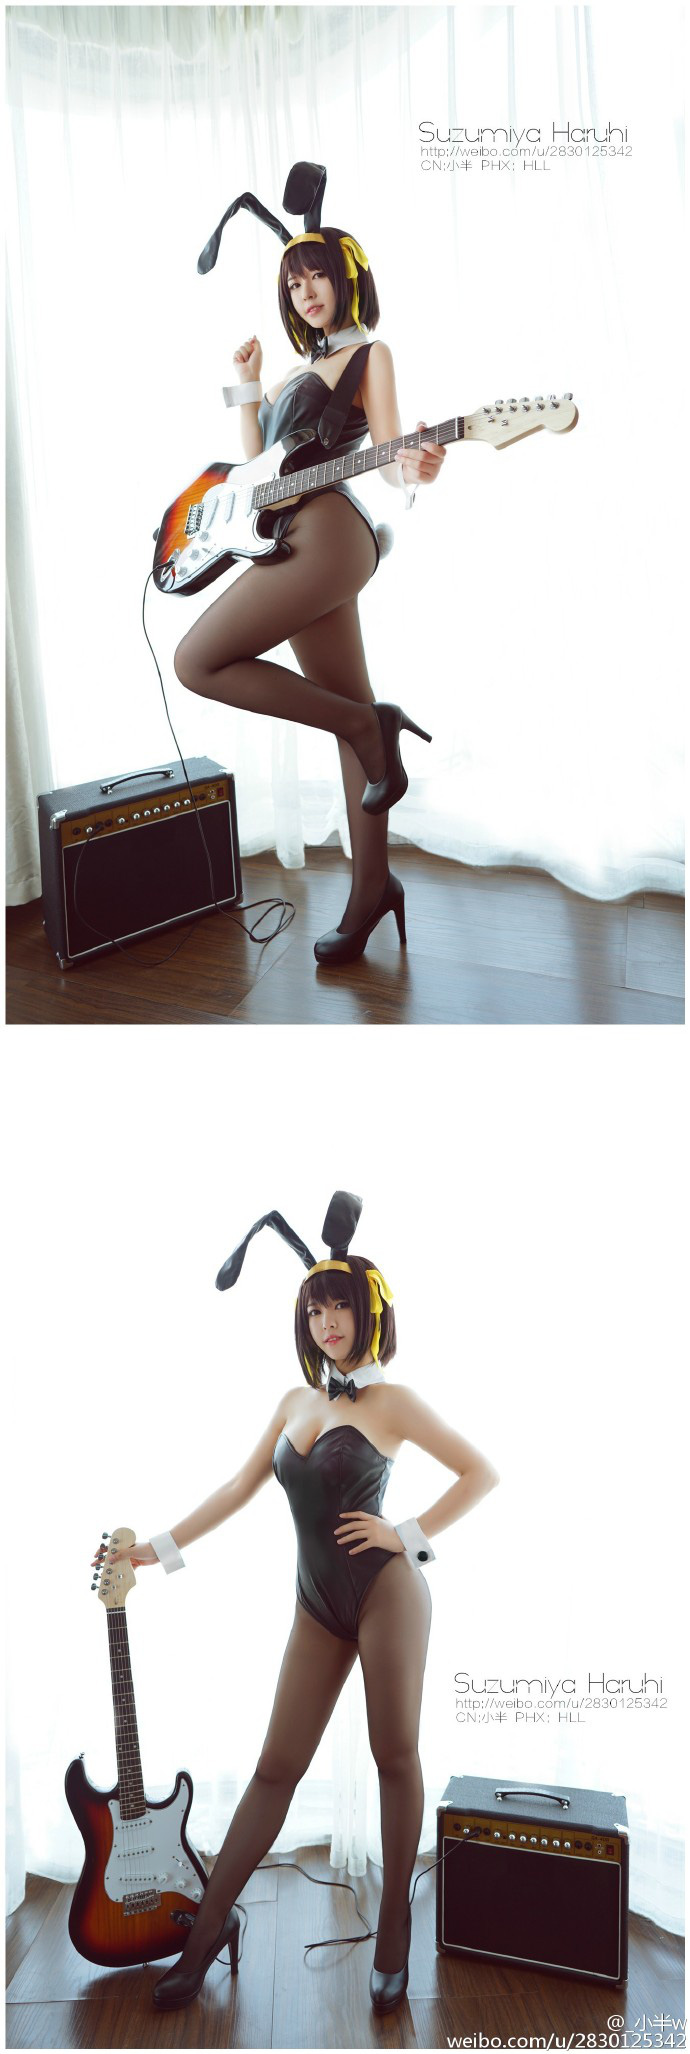 Cosplay Suzumiya Haruhi phiên bản “Thỏ Ngọc” nhìn phát mê